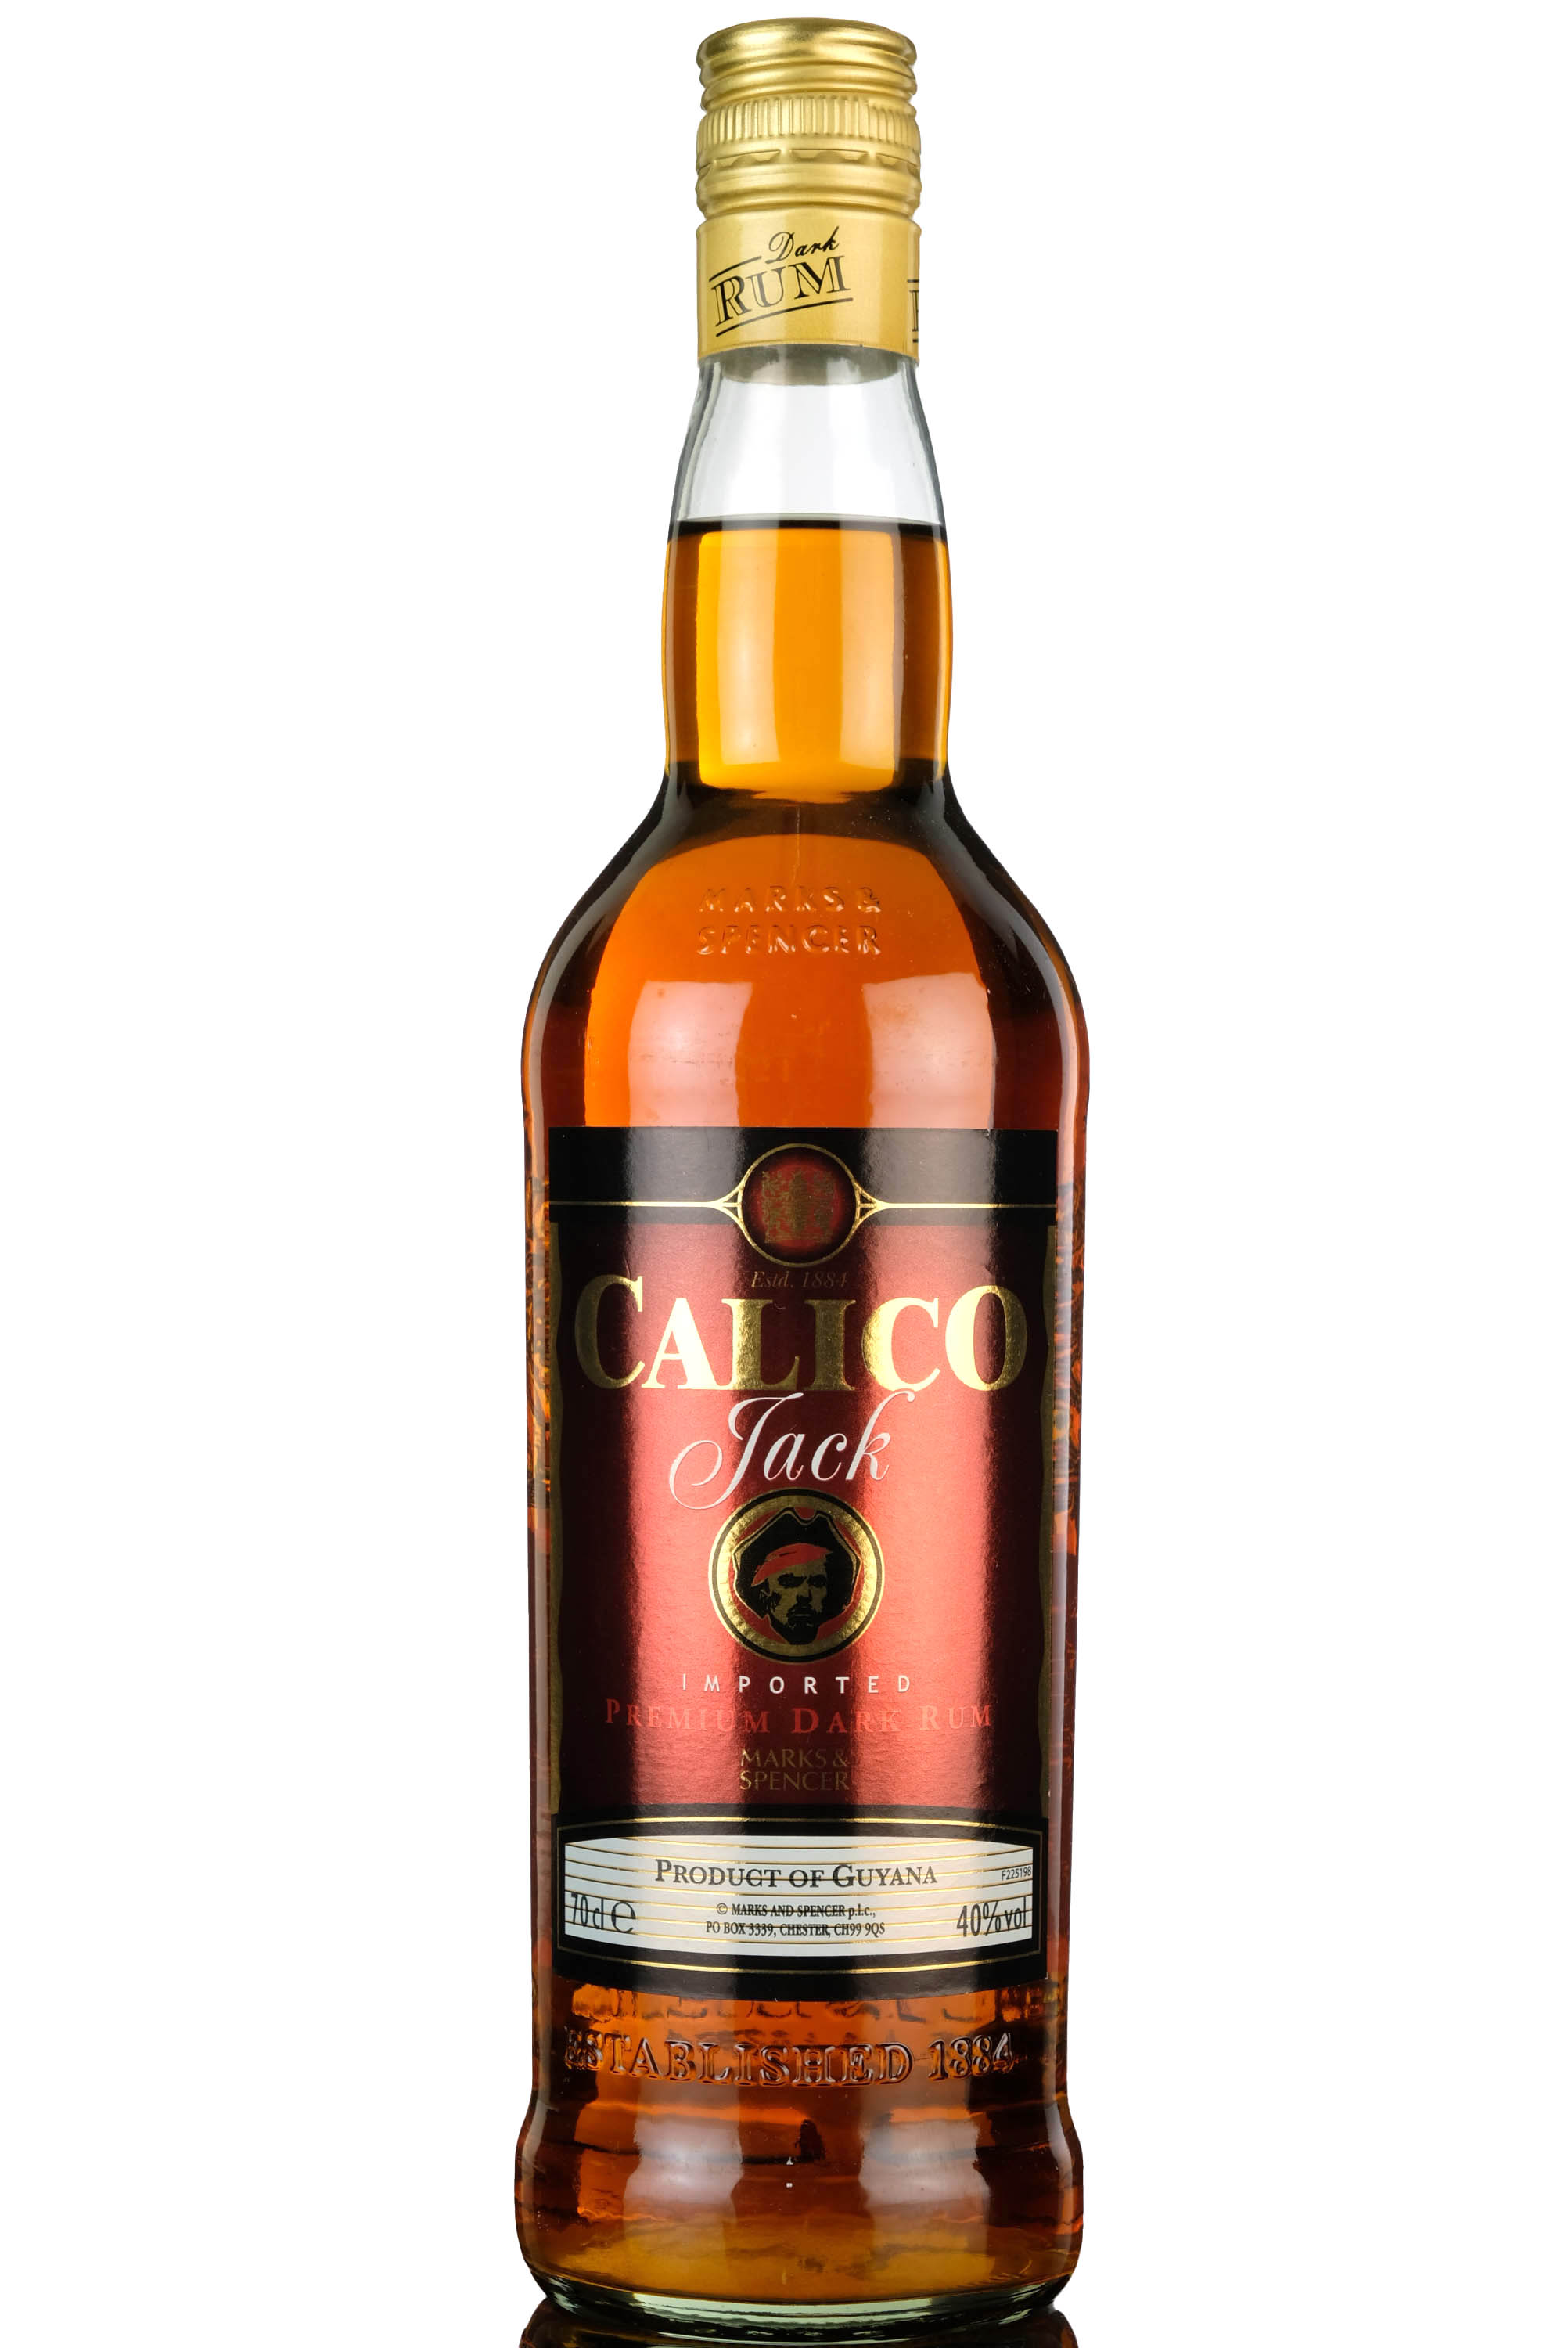 Calico Jack Rum